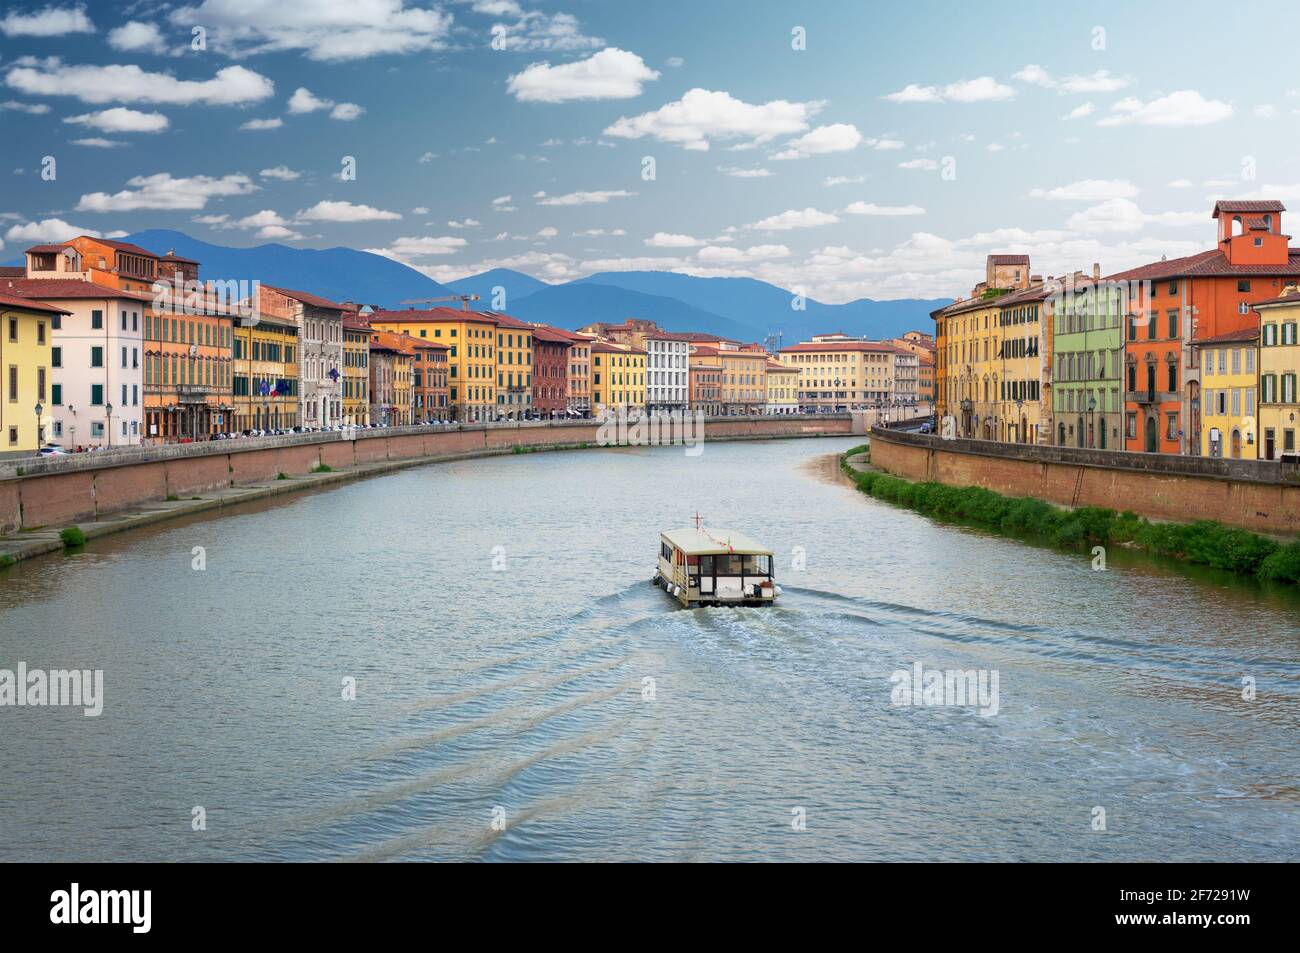 River Arno in Pisa Italy Stock Photo